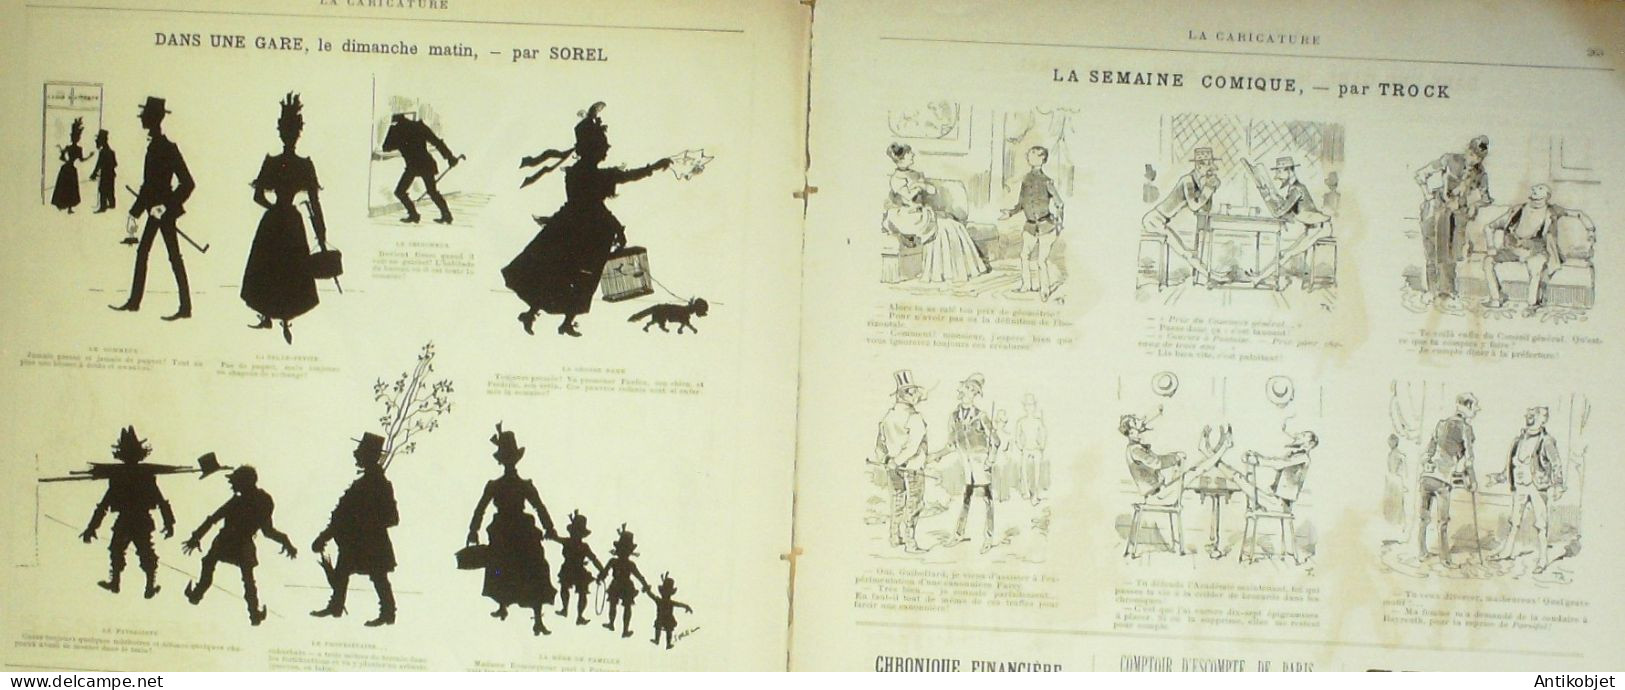 La Caricature 1886 N°345 Modes Du Jour Draner Caran D'Ache Par Luque Pyrénées Trock - Riviste - Ante 1900